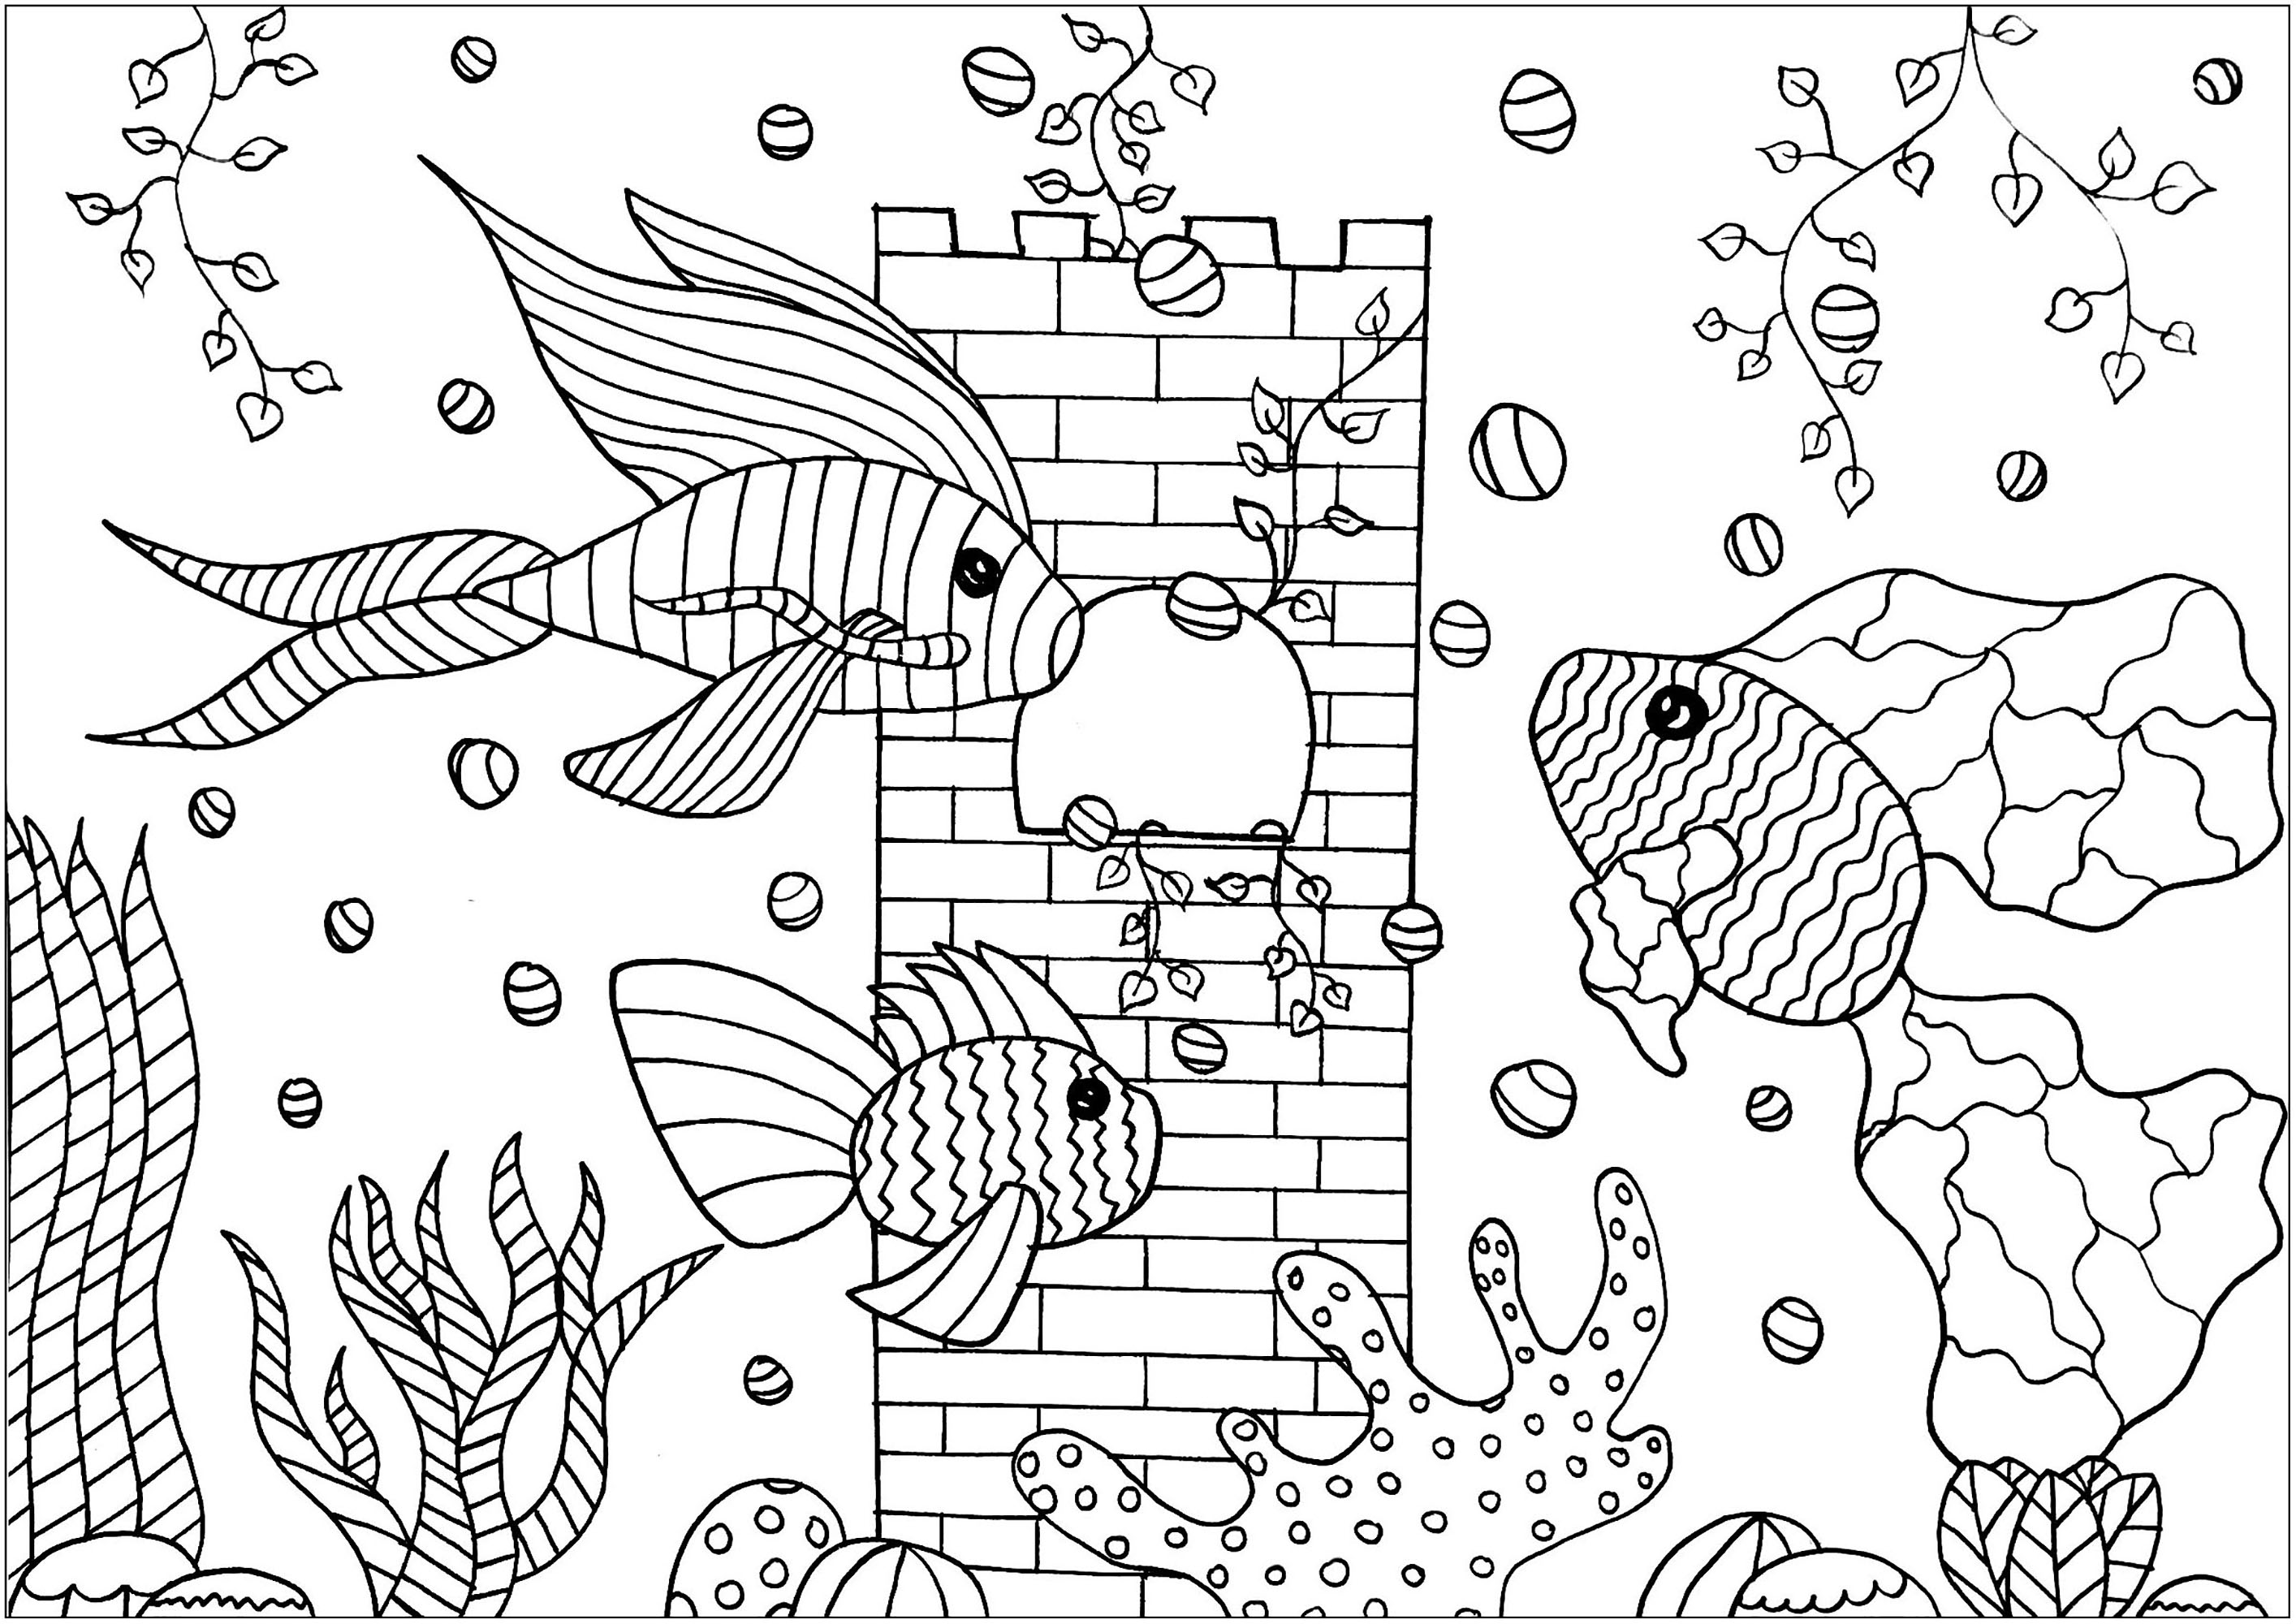 Coloriez ces poissons avec des motifs simples, qui nagent dans leur joli aquarium, Artiste : Amélie